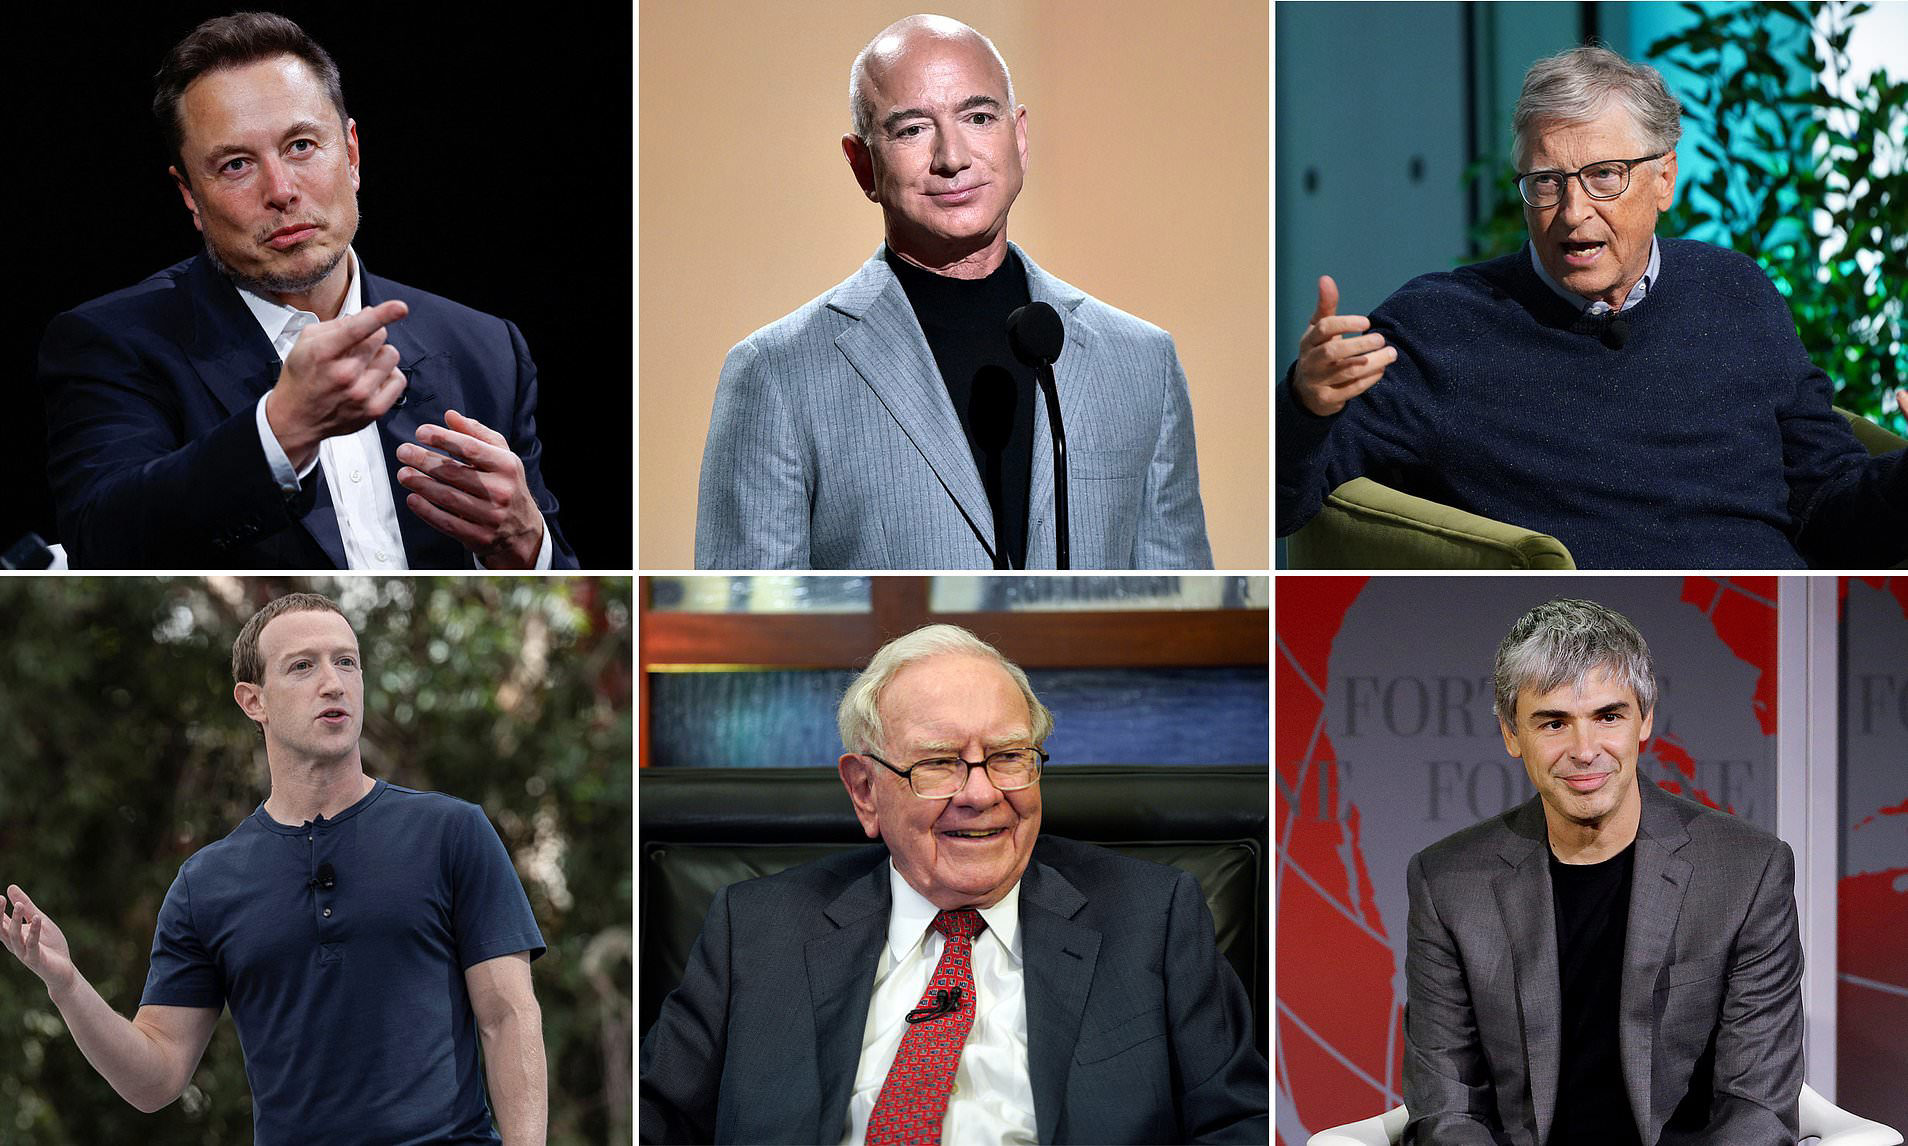 Bernard Arnault pips Jeff Bezos become world's richest person